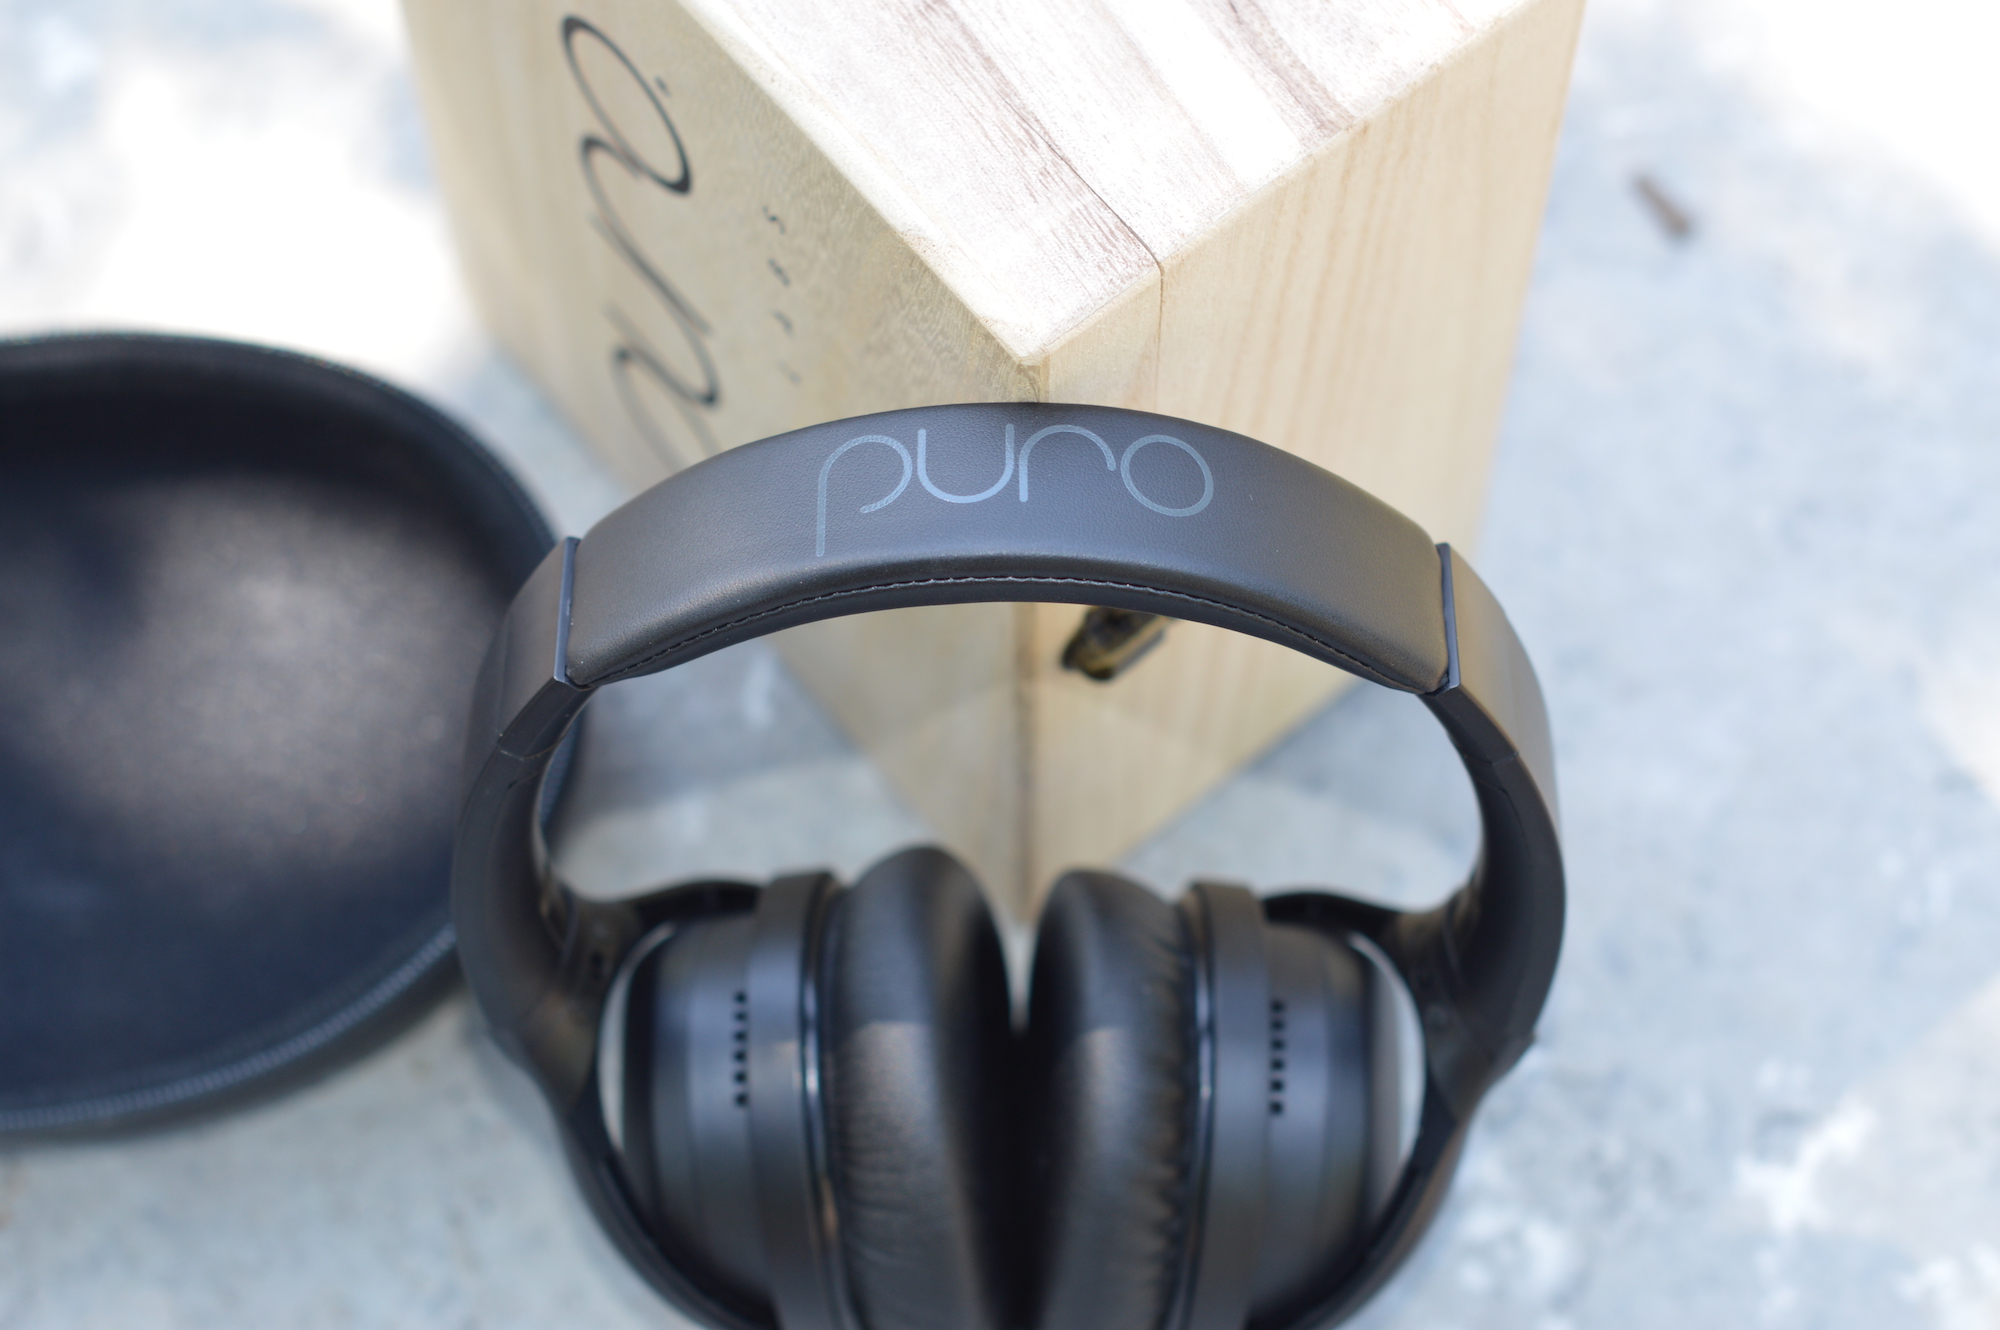 PuroPro Headphones